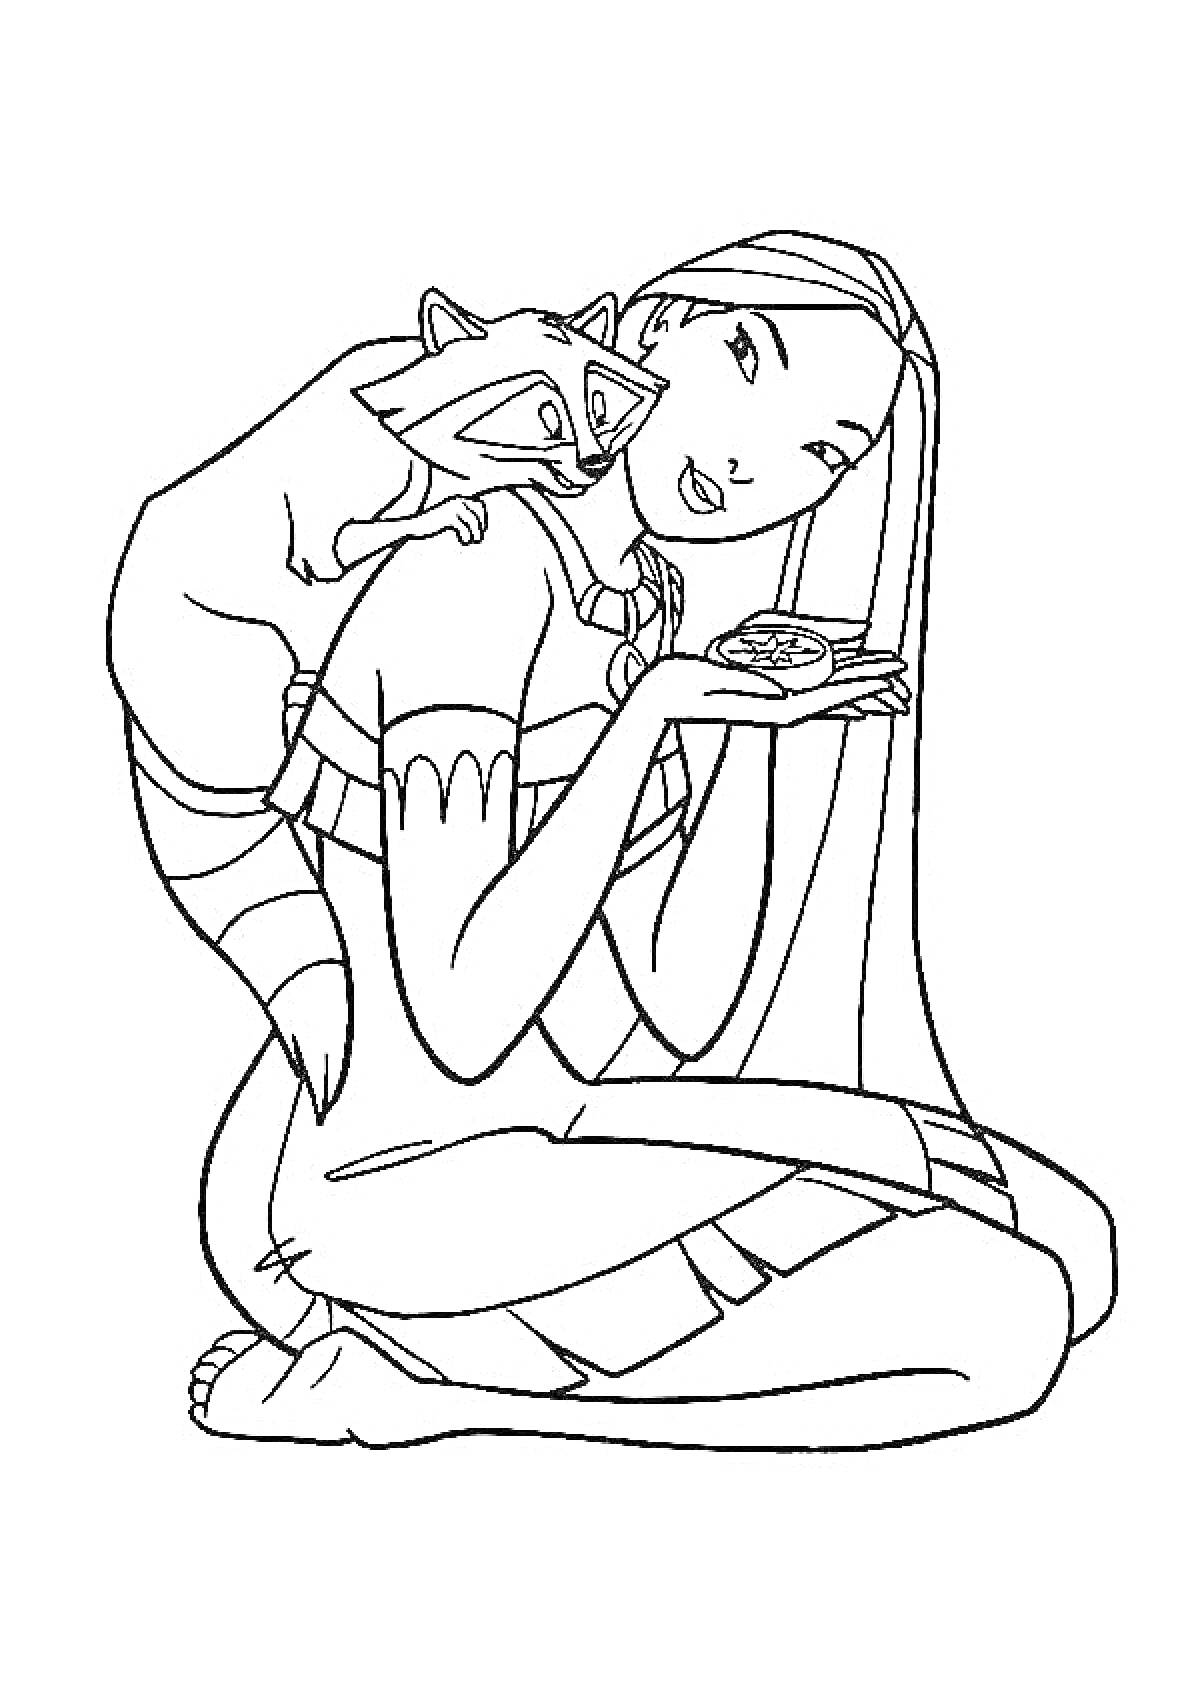 Раскраска Девушка из Дисней с длинными волосами и енотом на плече, держащая что-то в руках